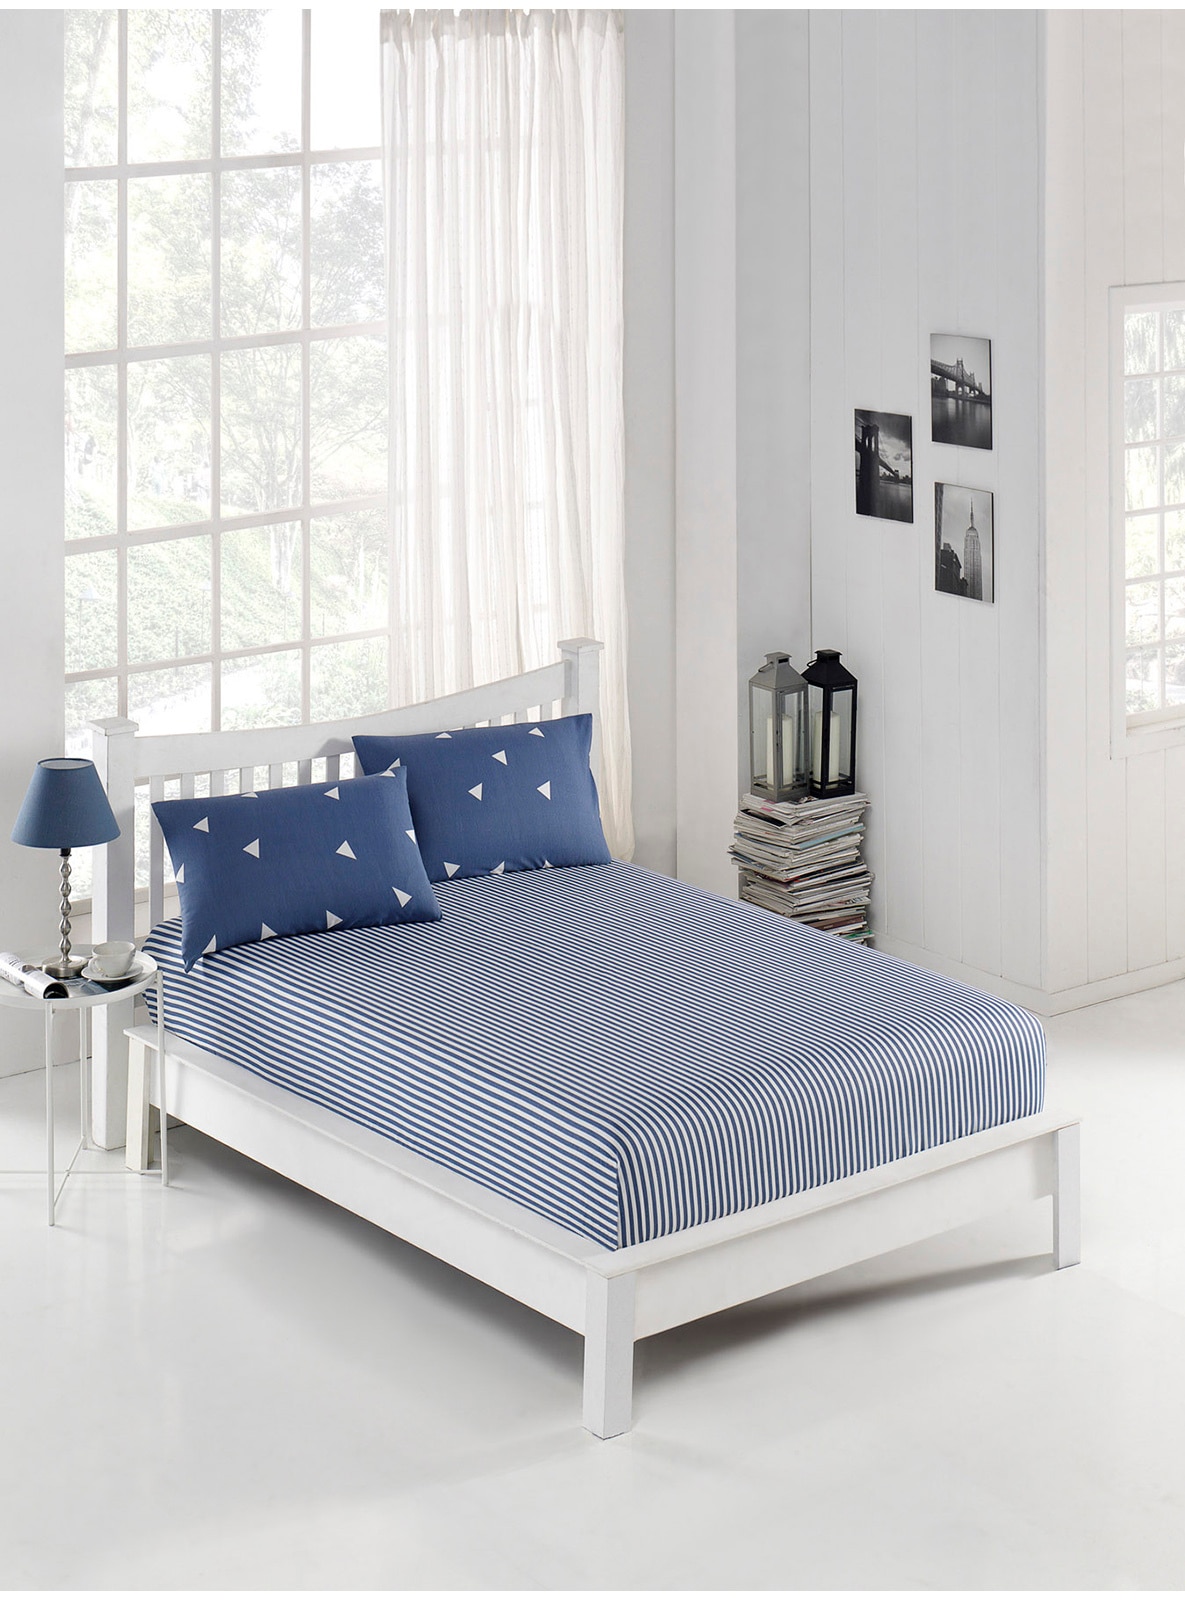 Blue - Bedsheet Set: 2 Pillowcases & Bedsheet